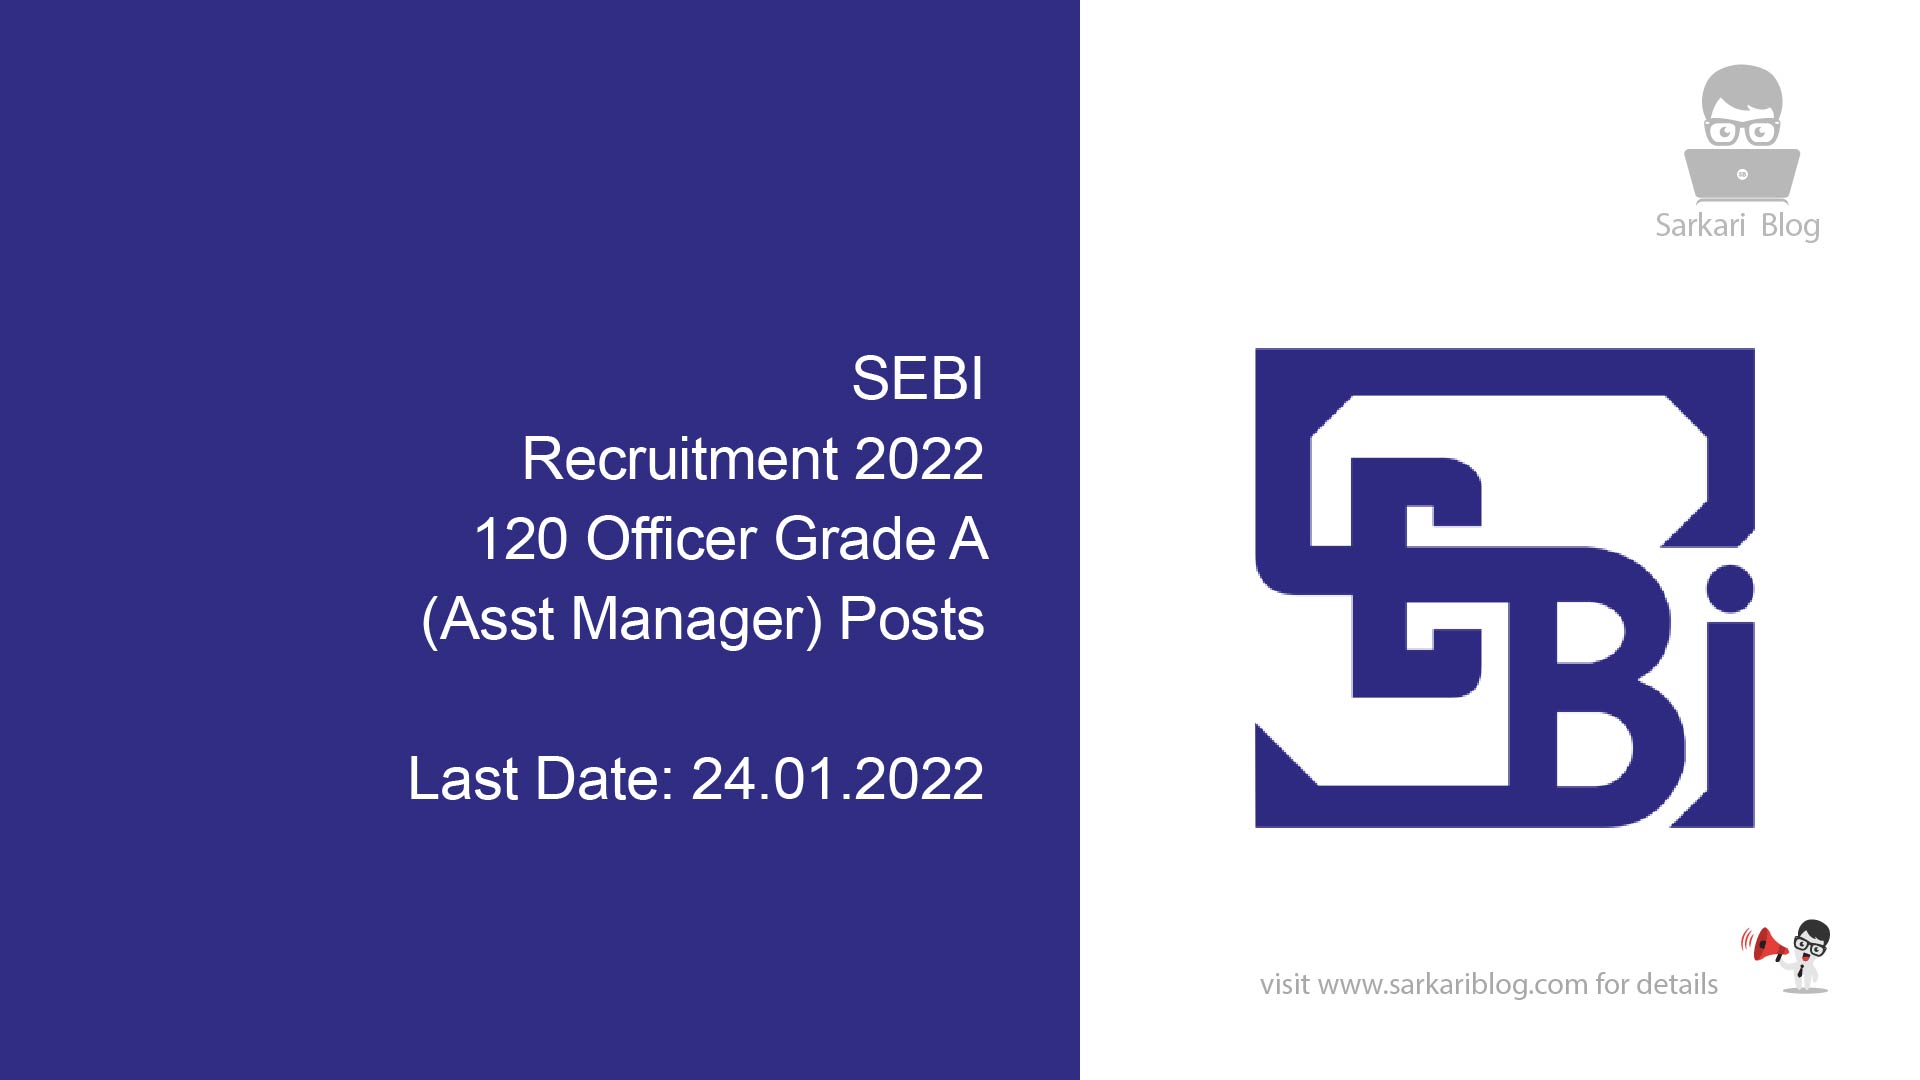 SEBI Recruitment 2022